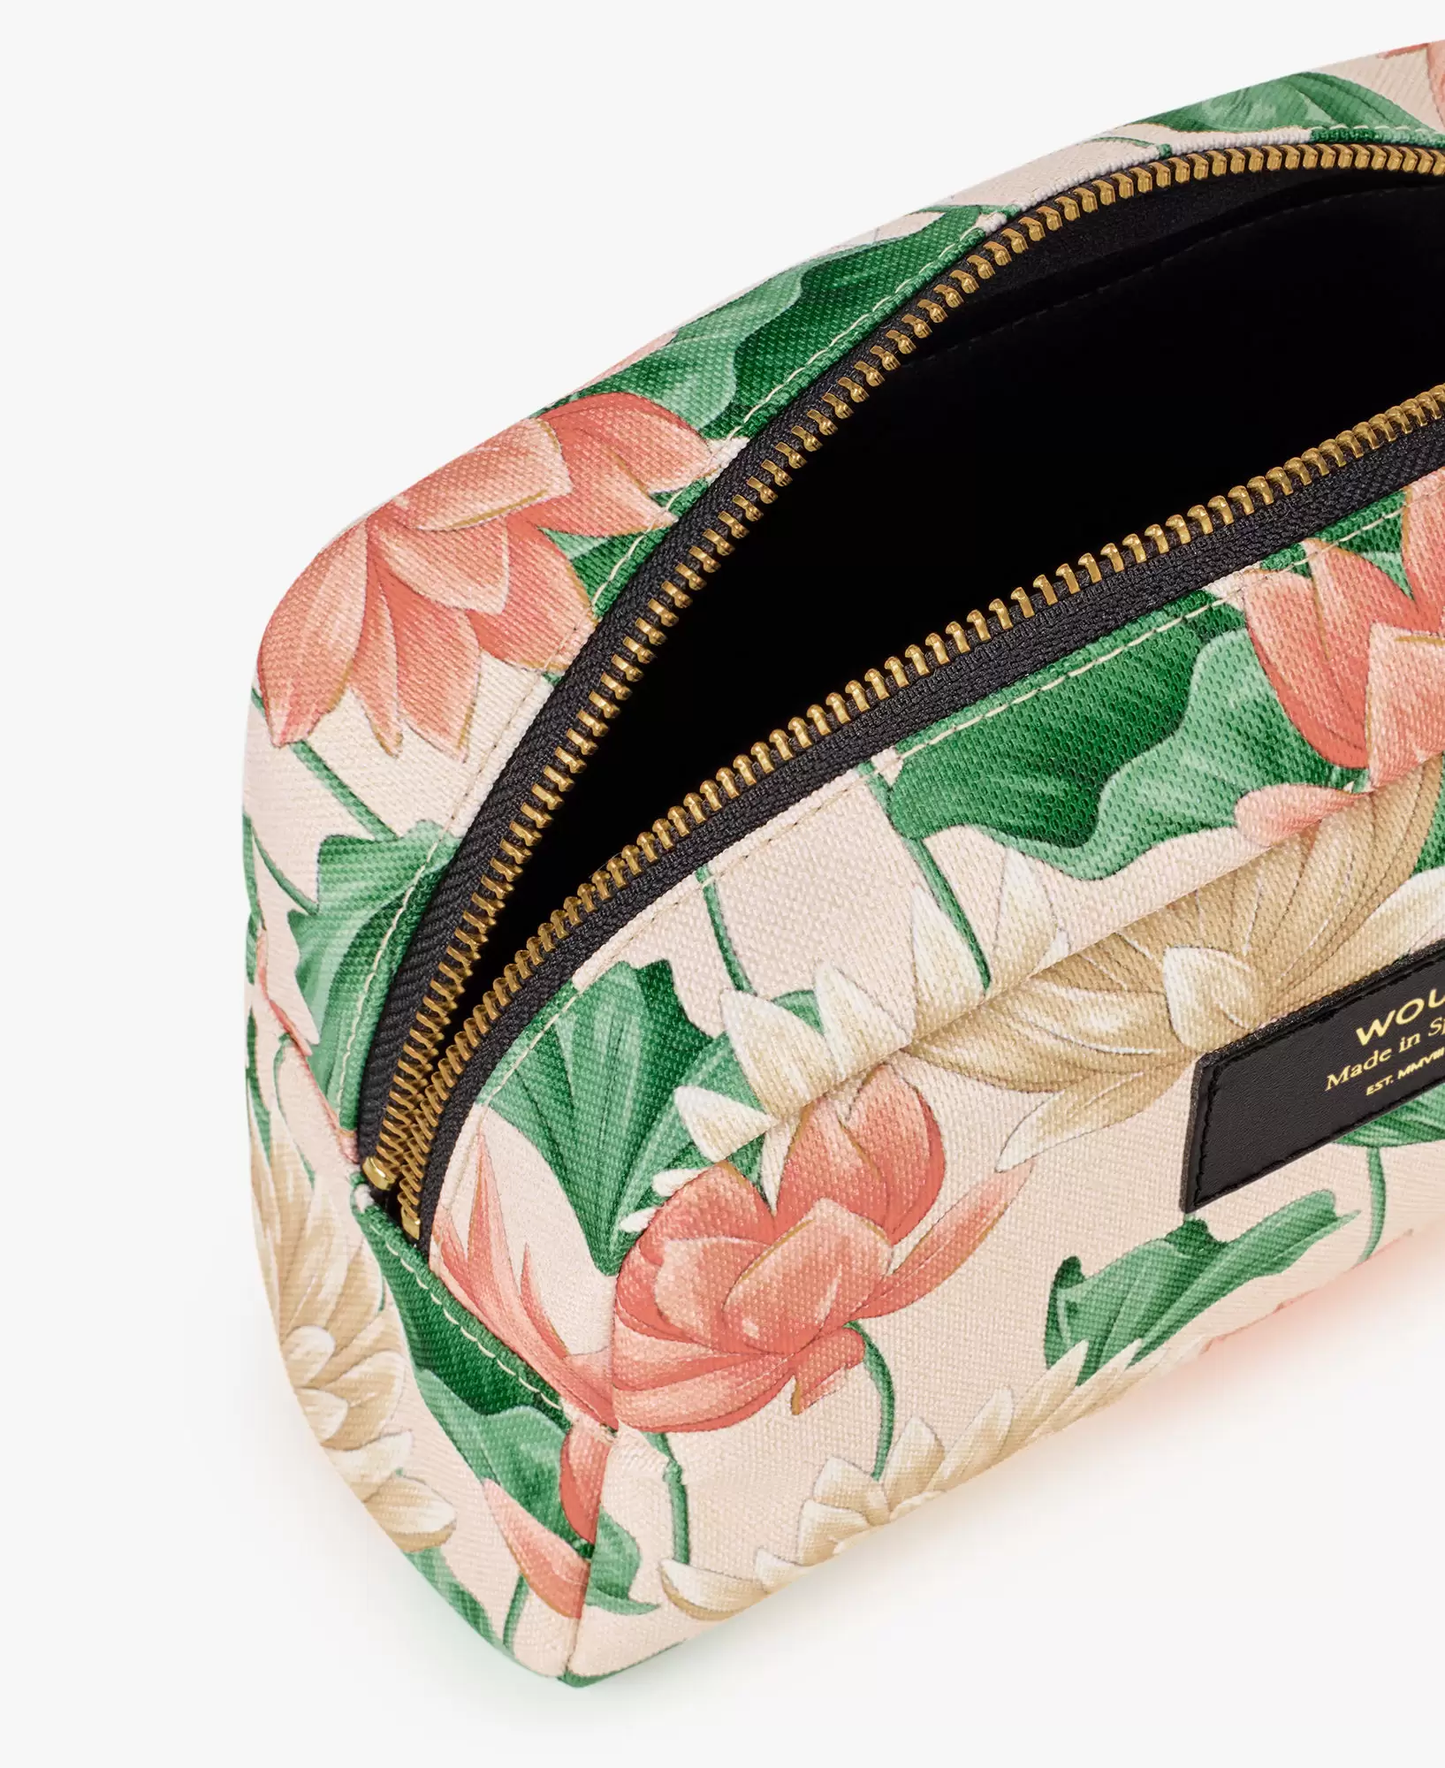 Tasche - Lotus Makeup Bag von Wouf